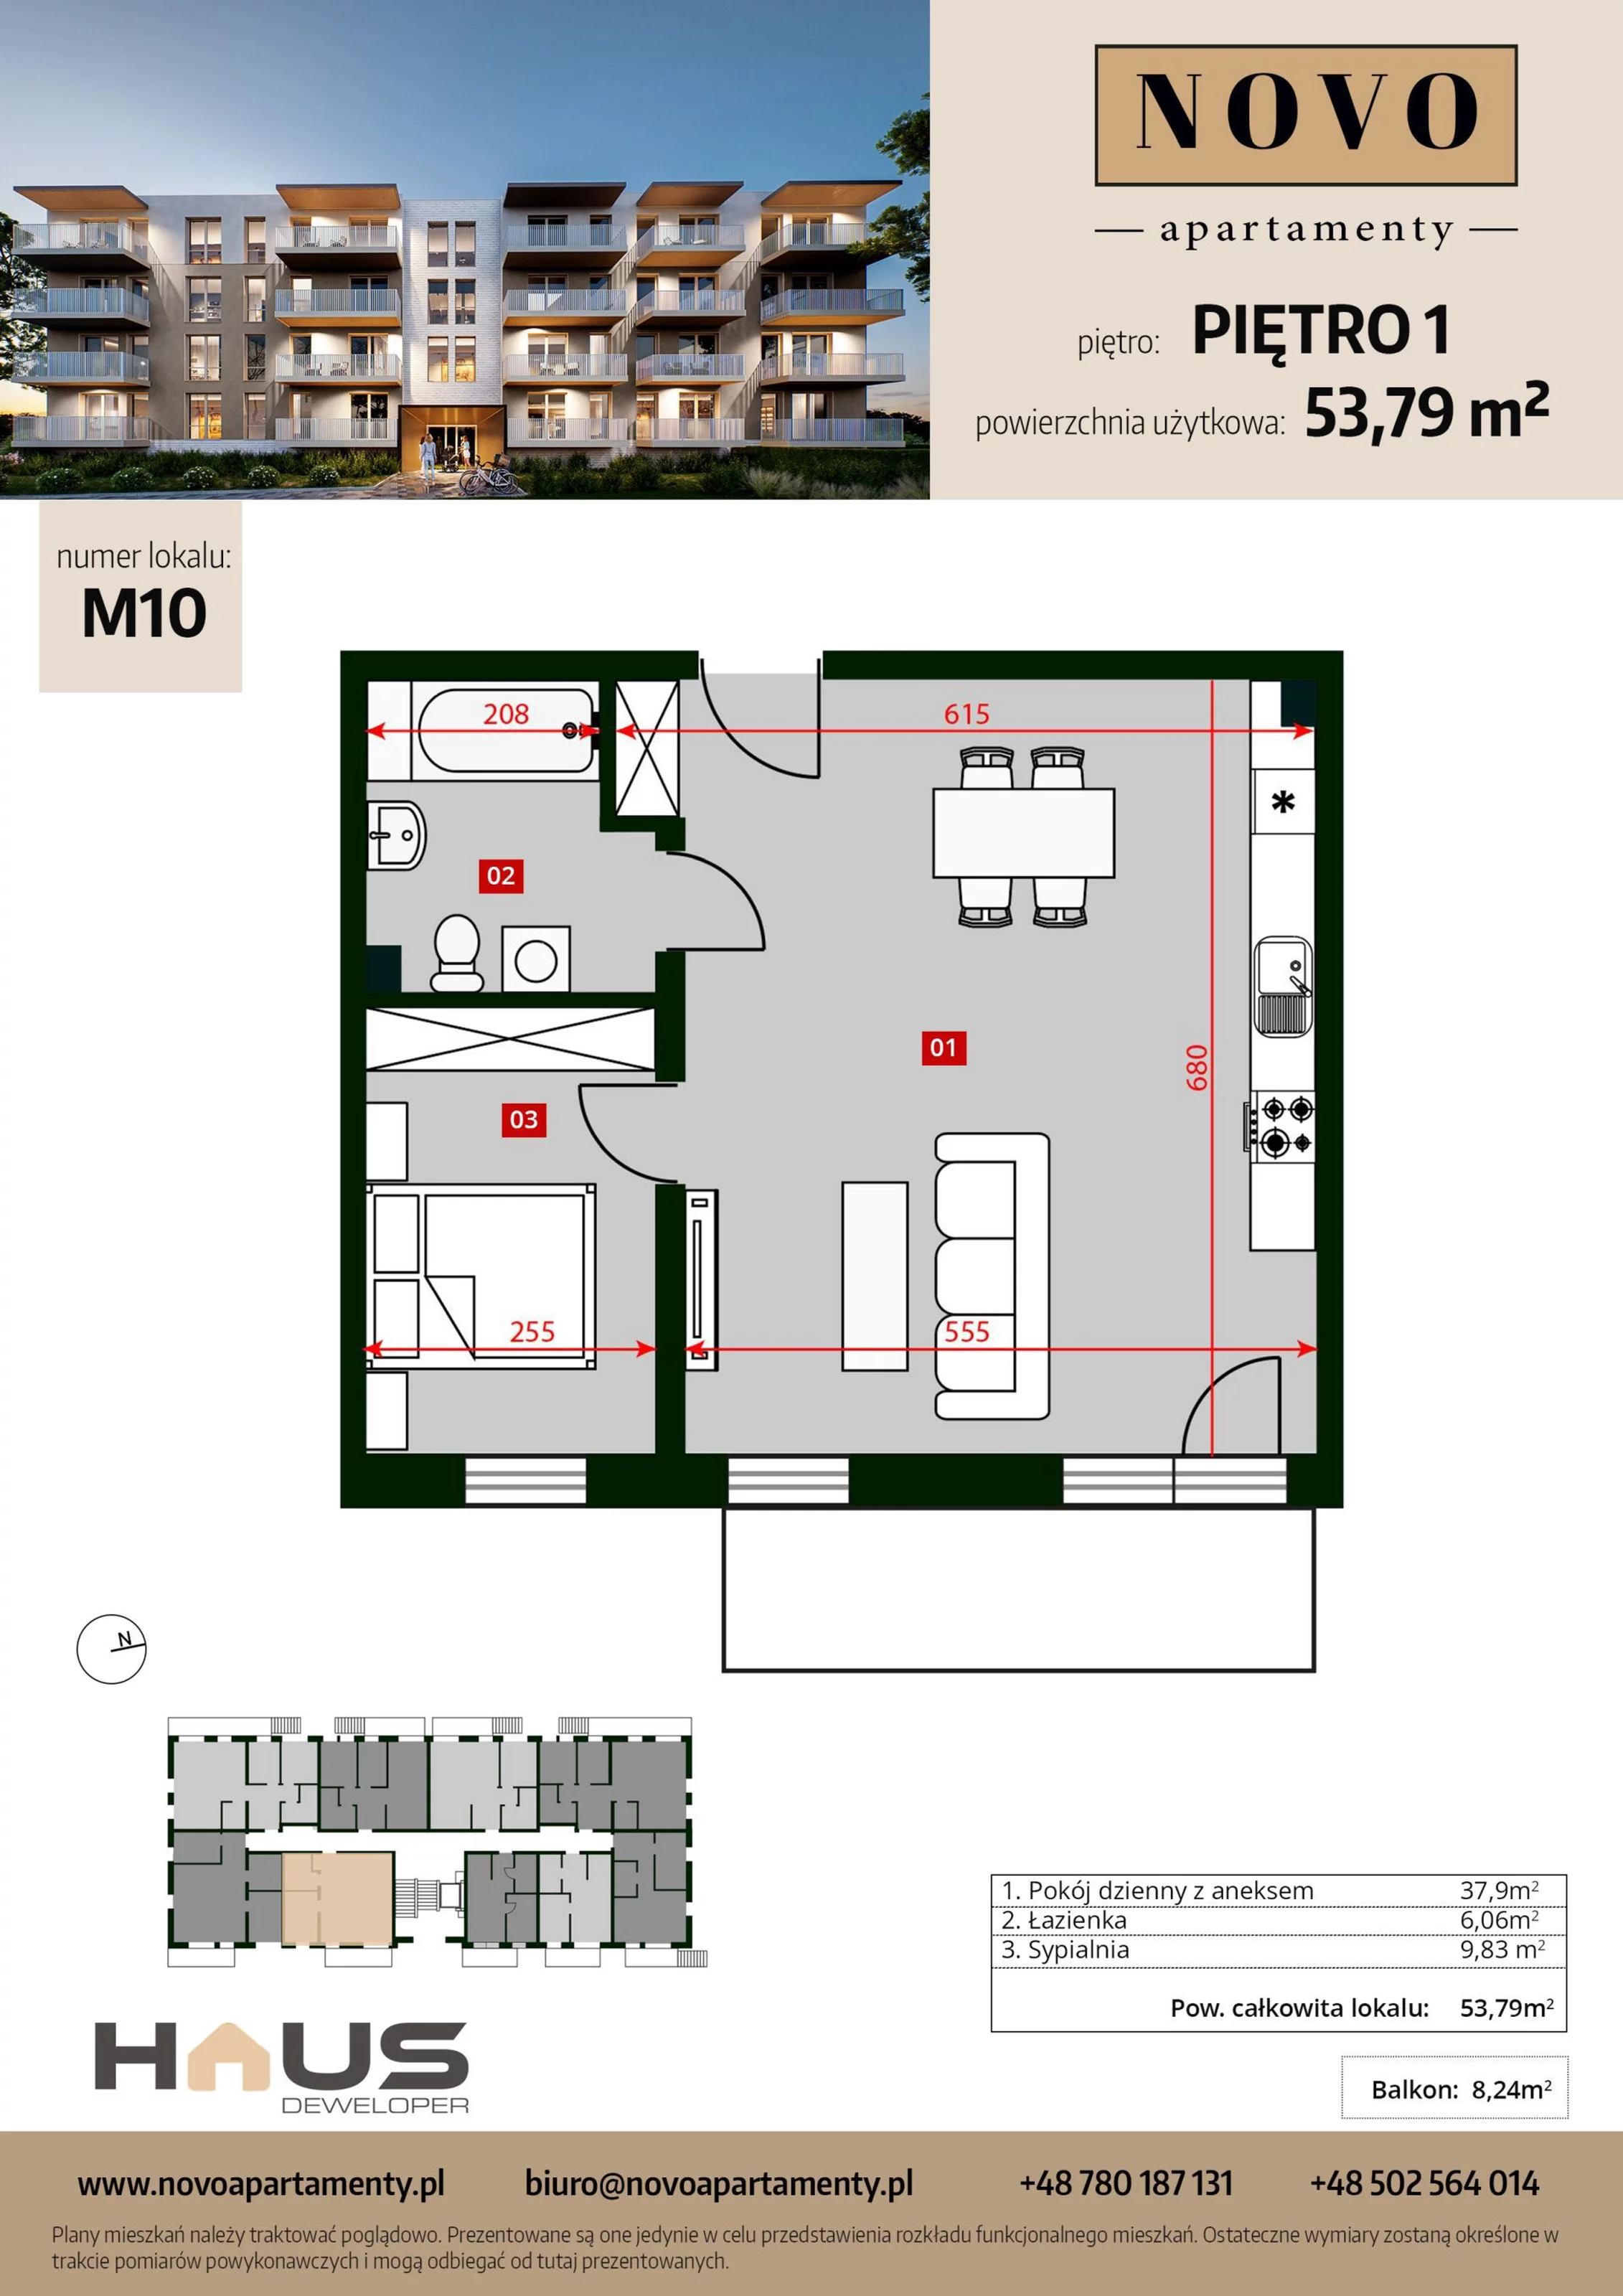 Mieszkanie 53,79 m², piętro 1, oferta nr M10, Apartamenty NOVO, Nysa, ul. Franciszkańska